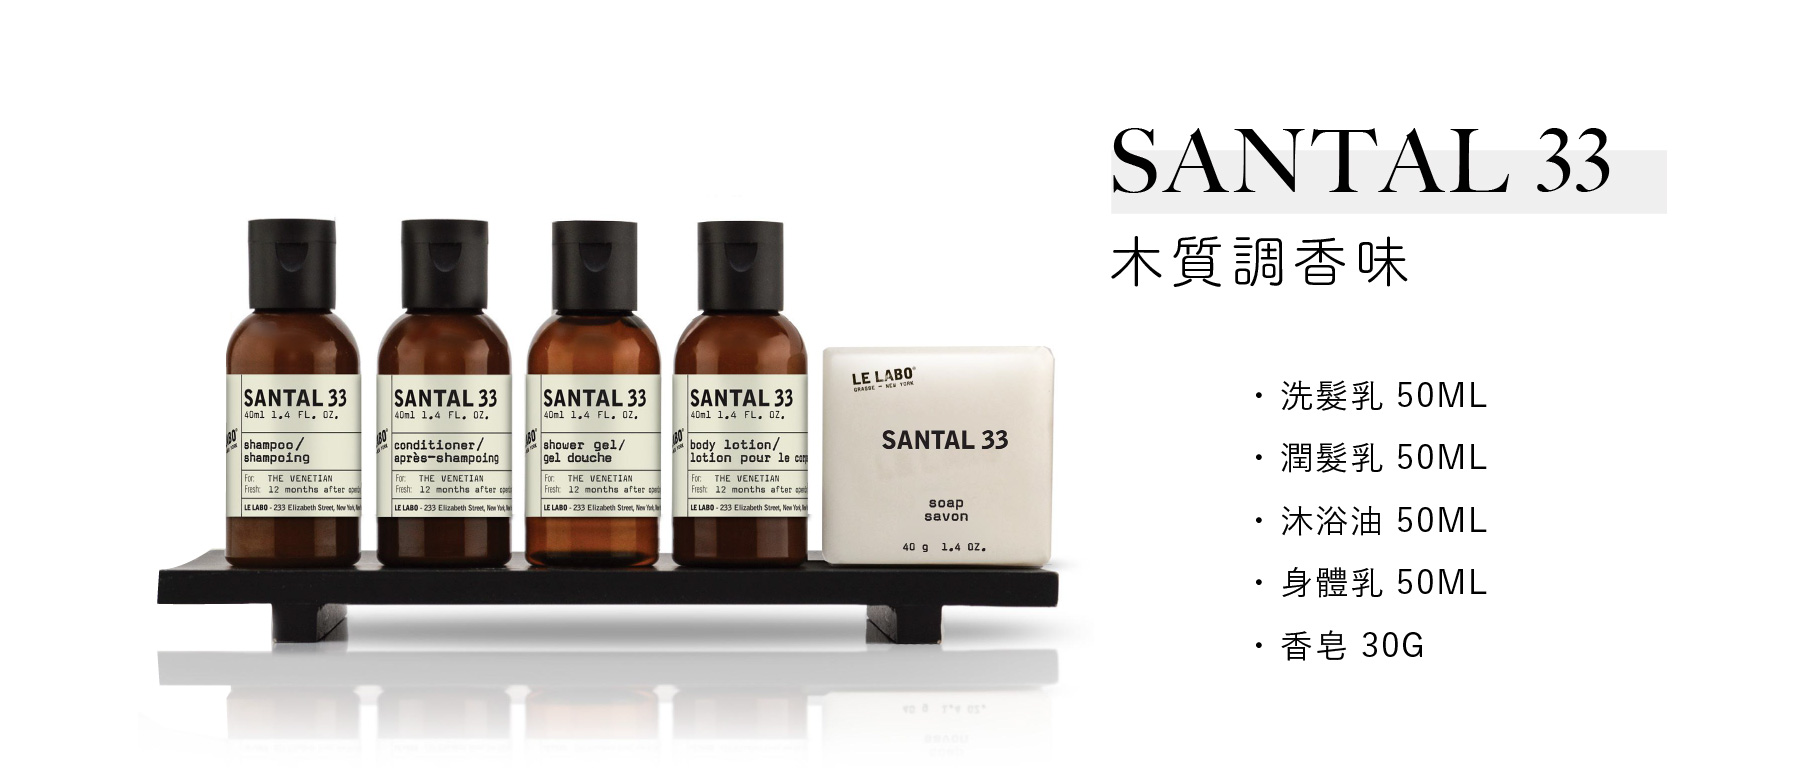 紐約香氛品牌Le Labo飯店沐浴備品, Santal33木質調香味系列，40ml瓶裝的洗髮乳、潤髮乳、沐浴油、身體乳和40g香皂